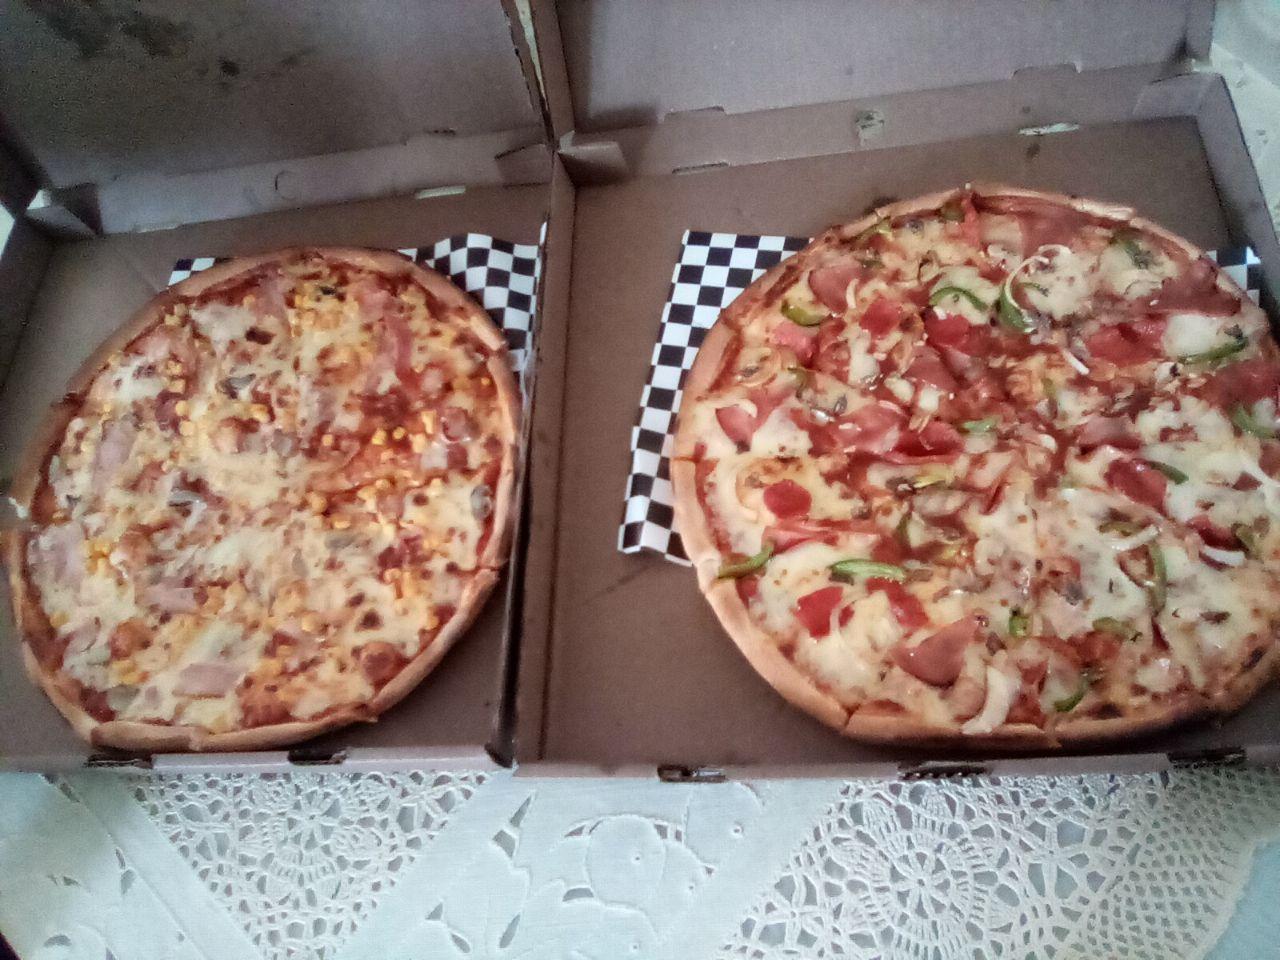 eng-esp-an-afternoon-of-pizza-una-tarde-de-pizza-blurt